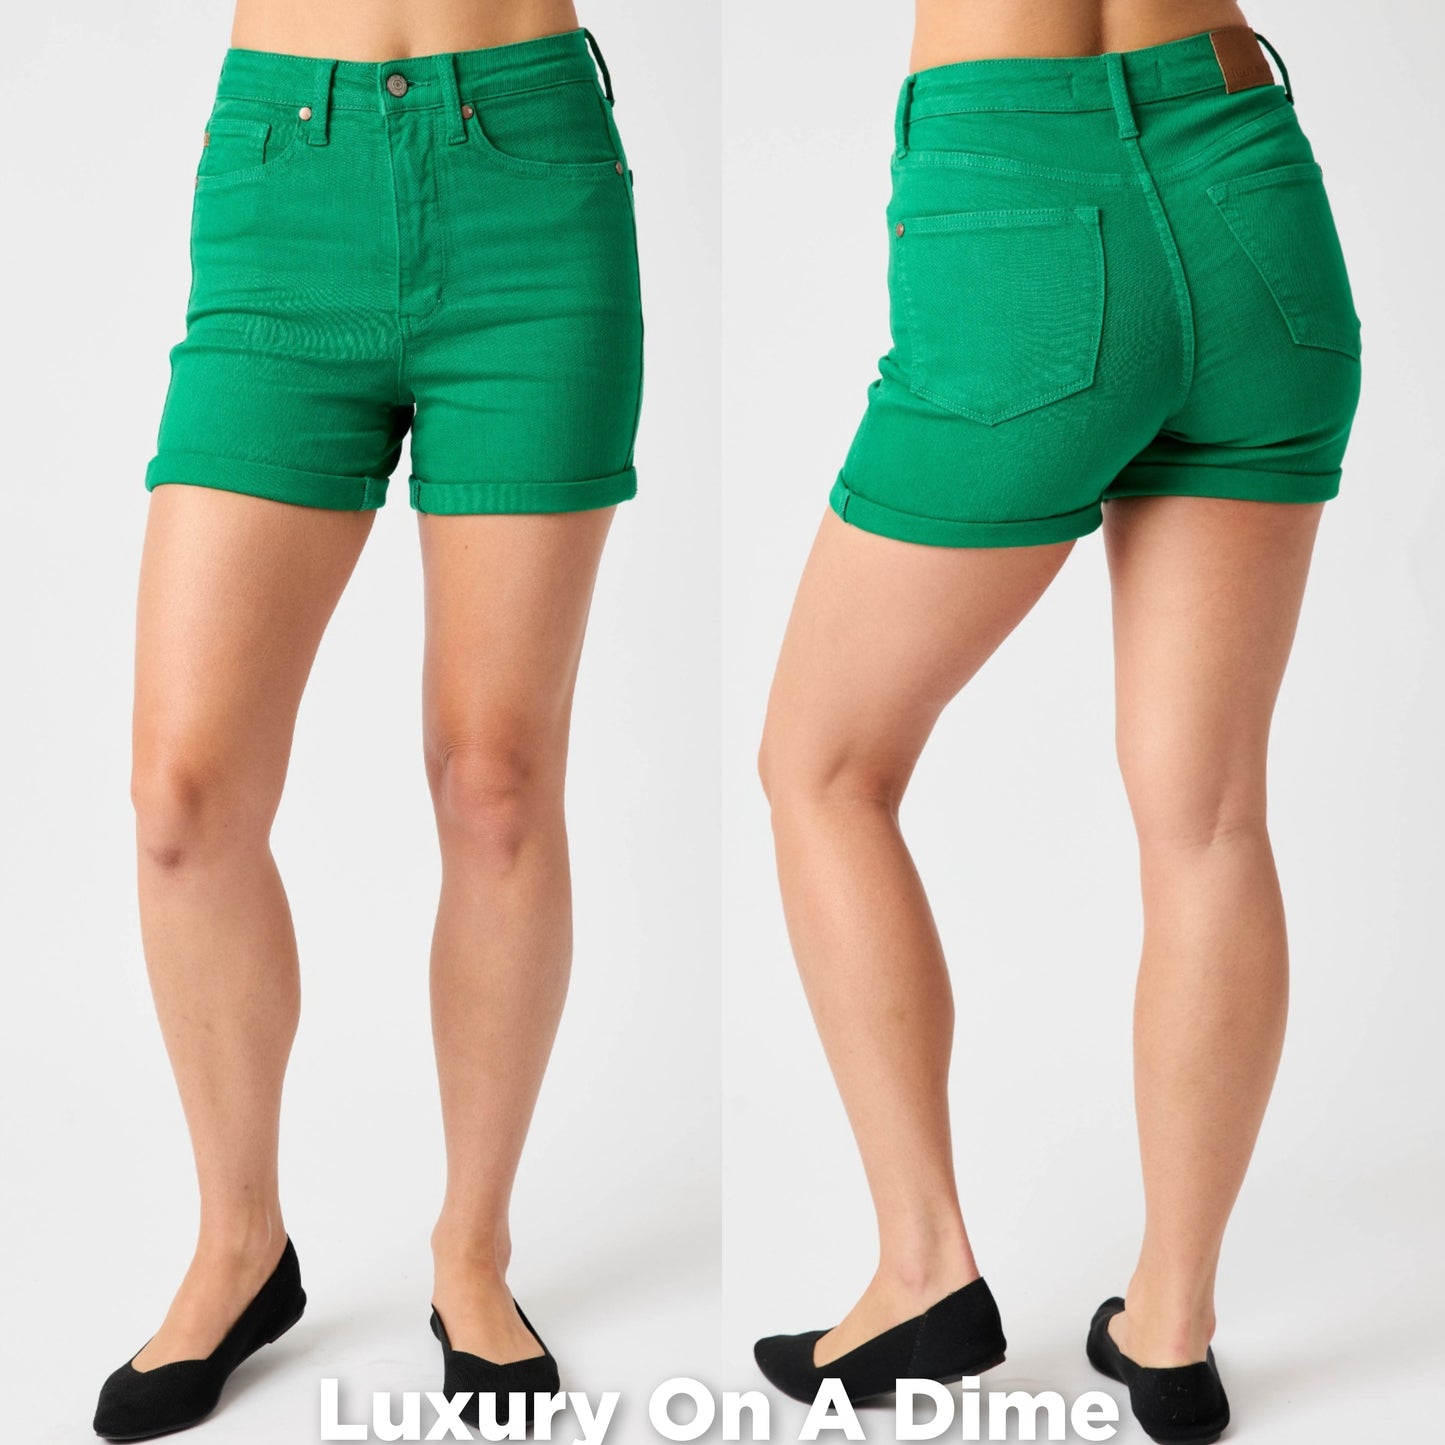 High Rise Tummy Control Slim Leg Rolled Cuff Green Denim Shorts Jean Judy Blue